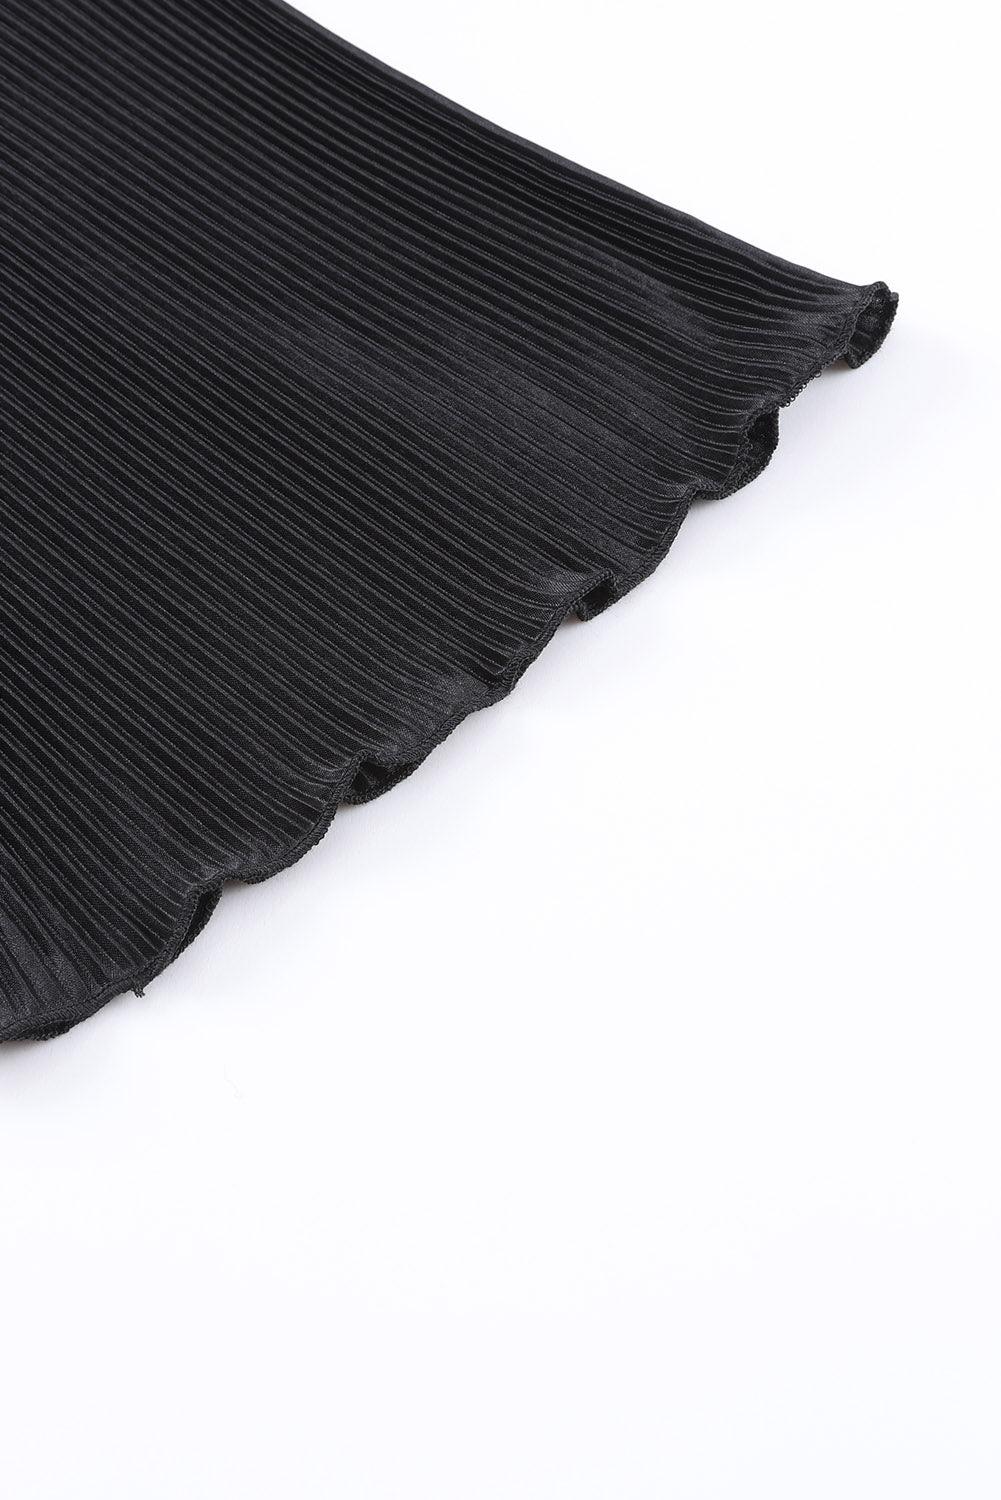 Crna plisirana košulja 3/4 rukava i salonski set kratkih hlača visokog struka